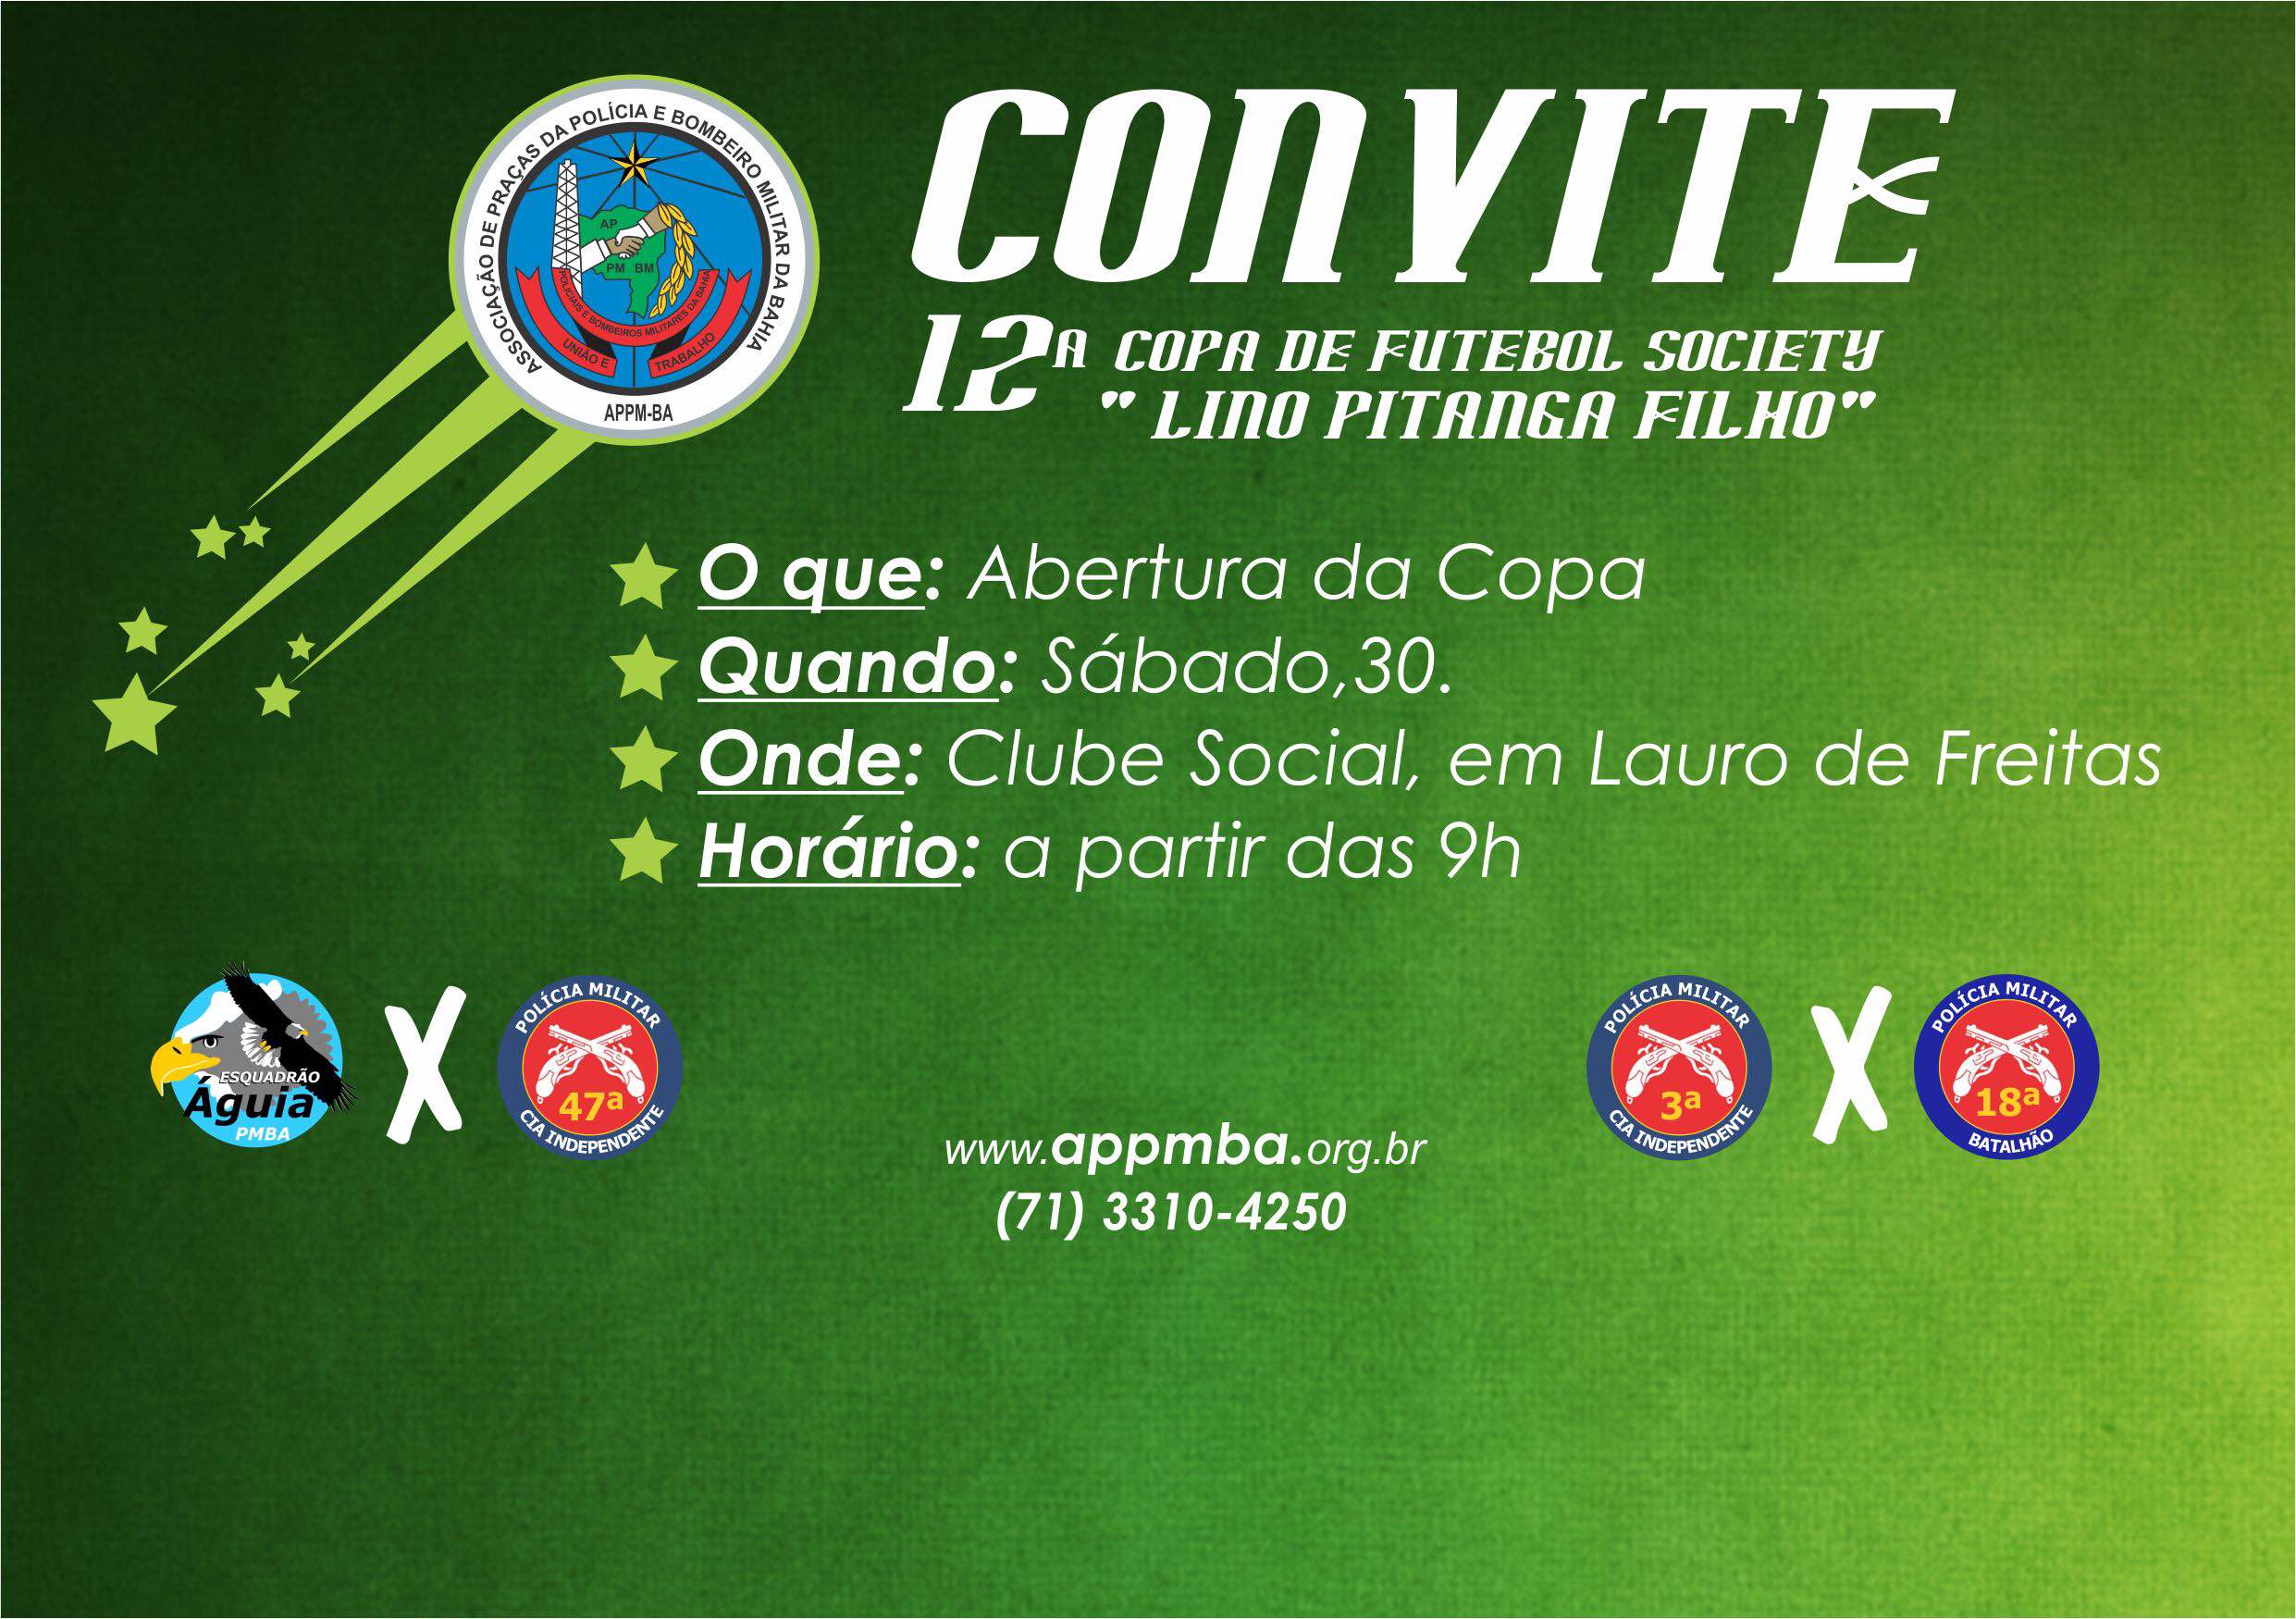 Convite - 12ª Edição da Copa de Futebol Society 